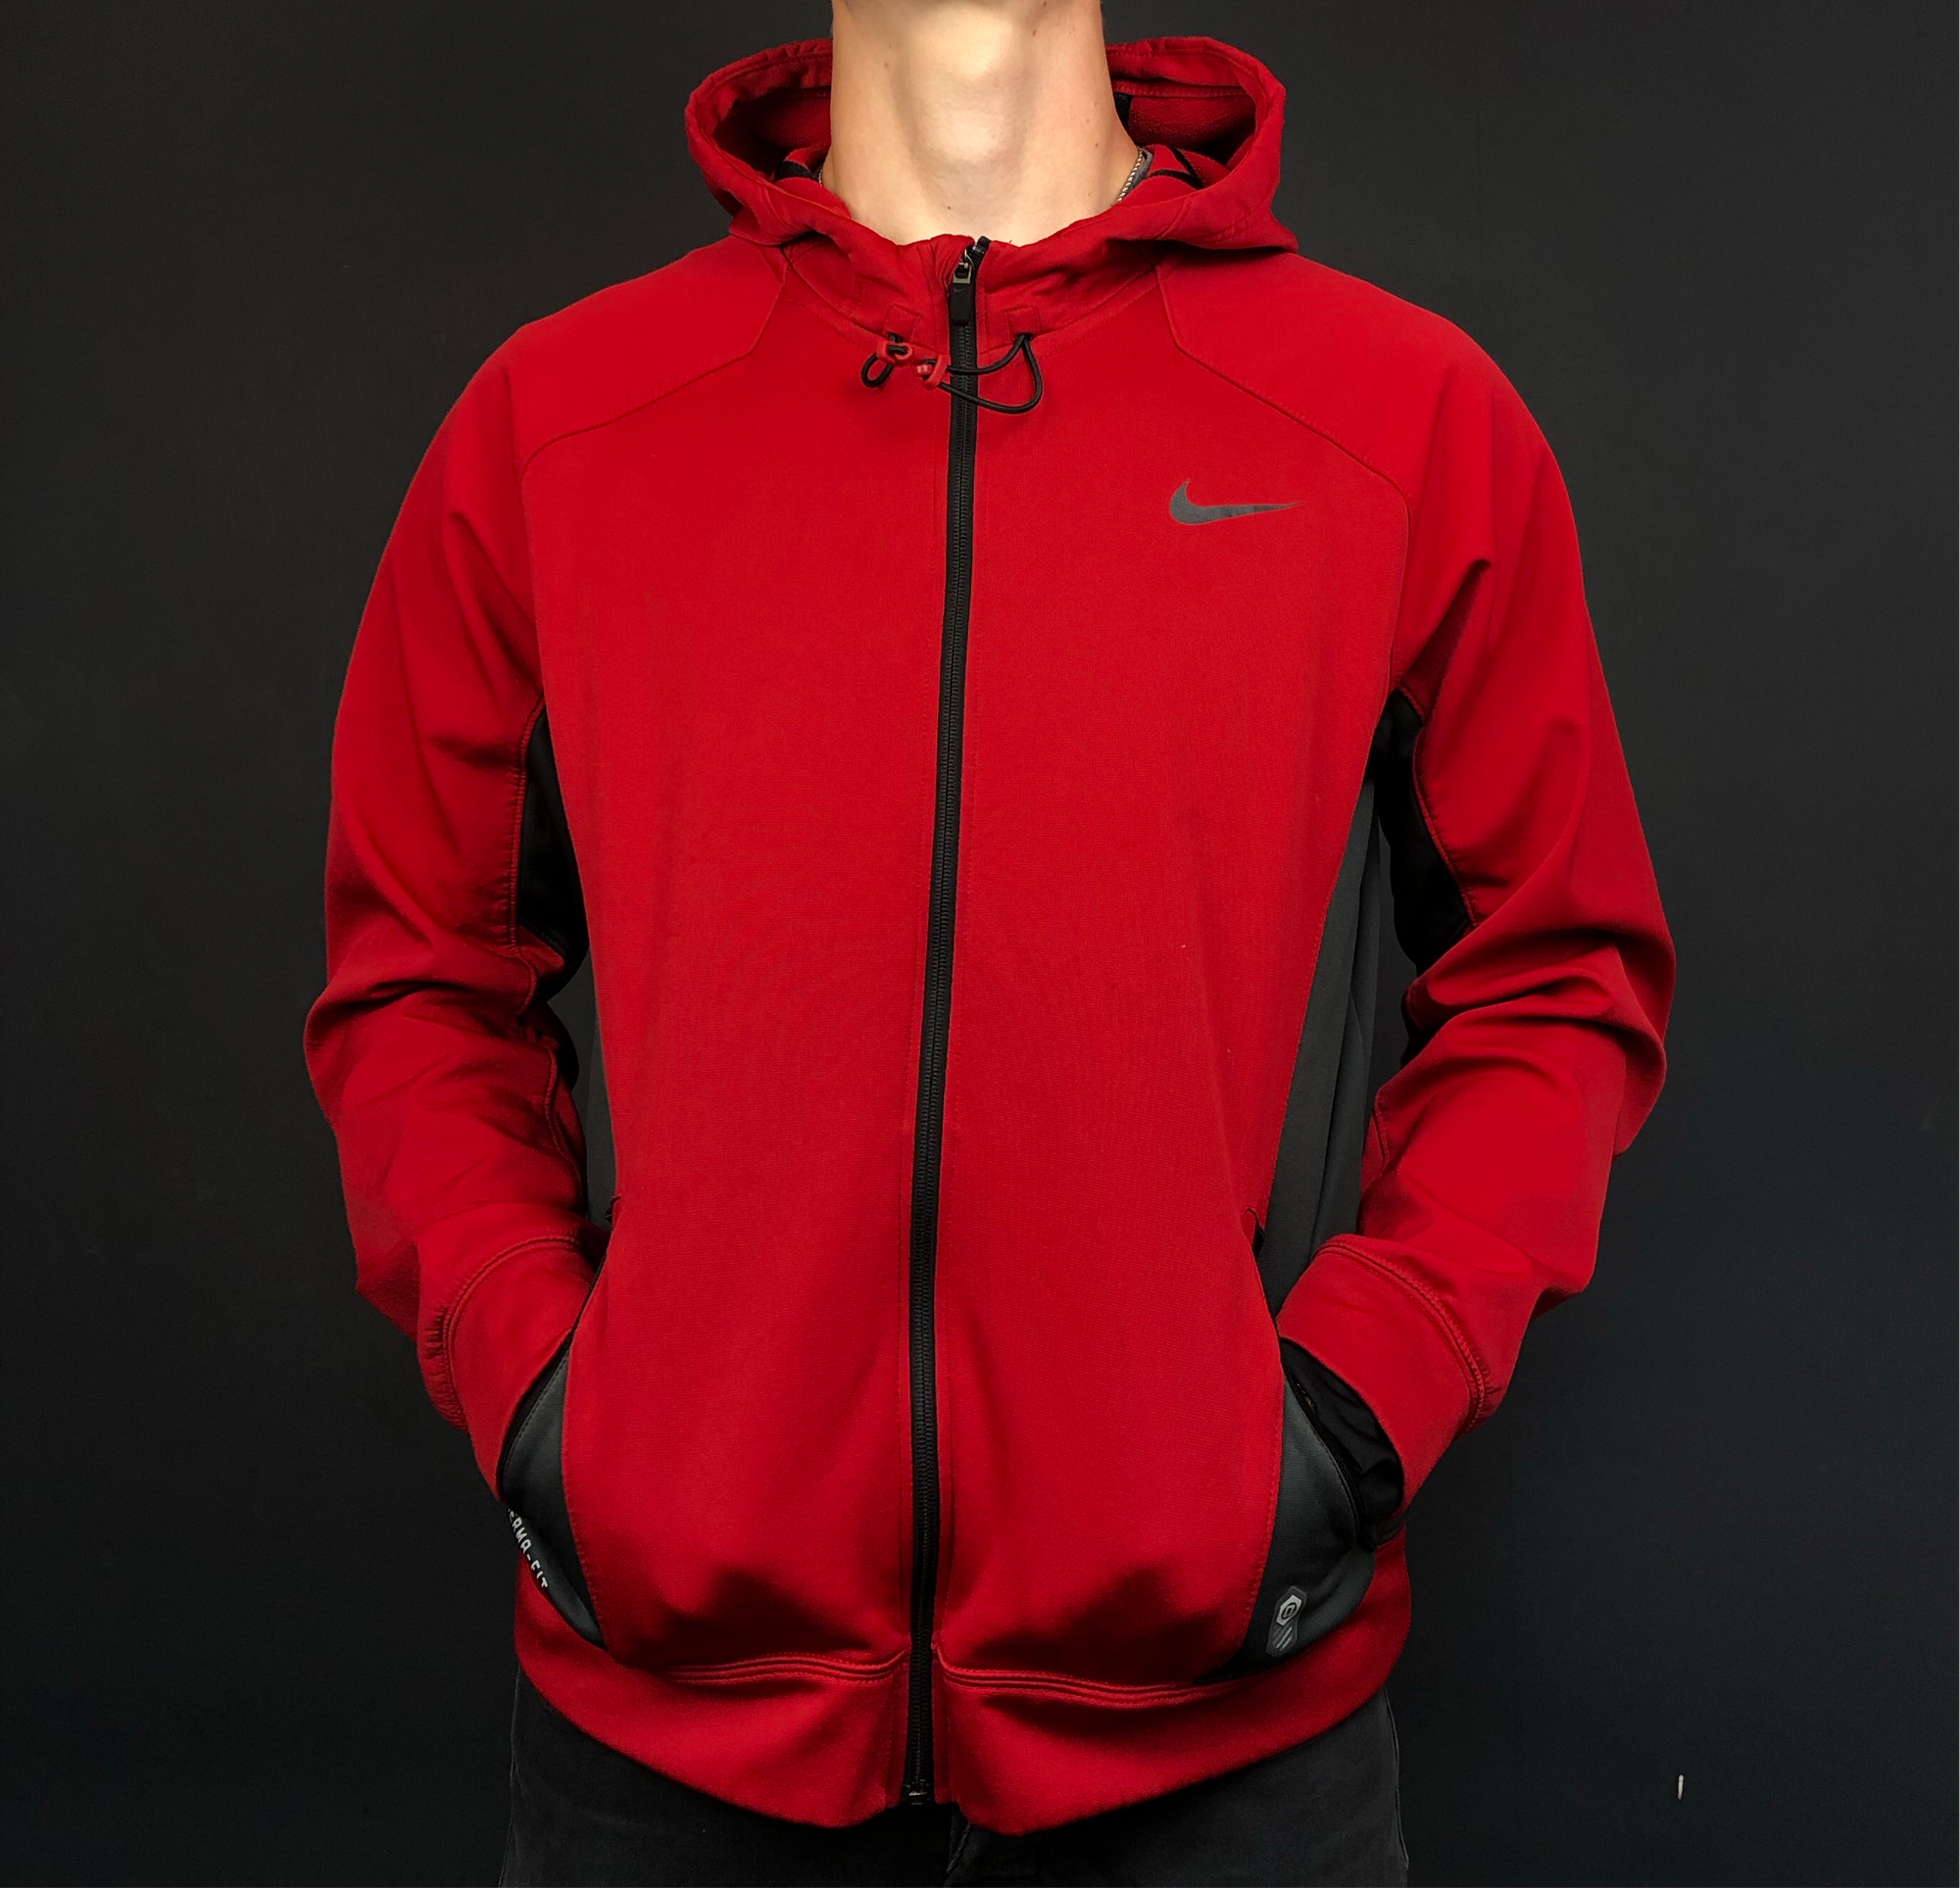 Therma-Fit Nike Jacket / Hoodie in Red & Black - Large